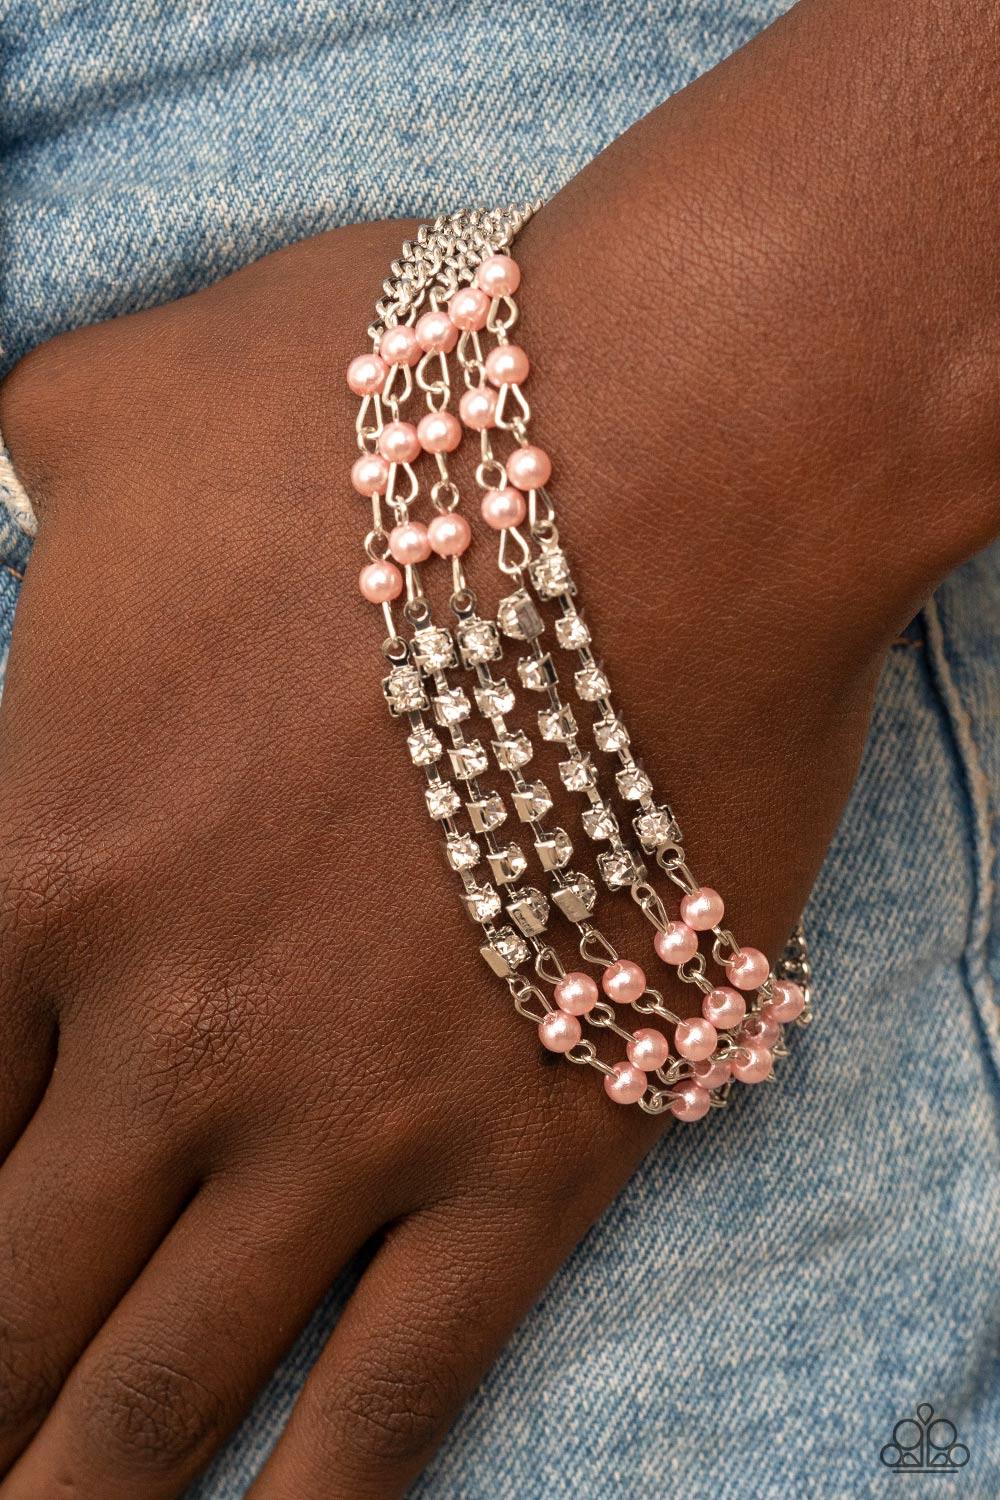 Experienced in Elegance Pink Bracelet - Jewelry by Bretta